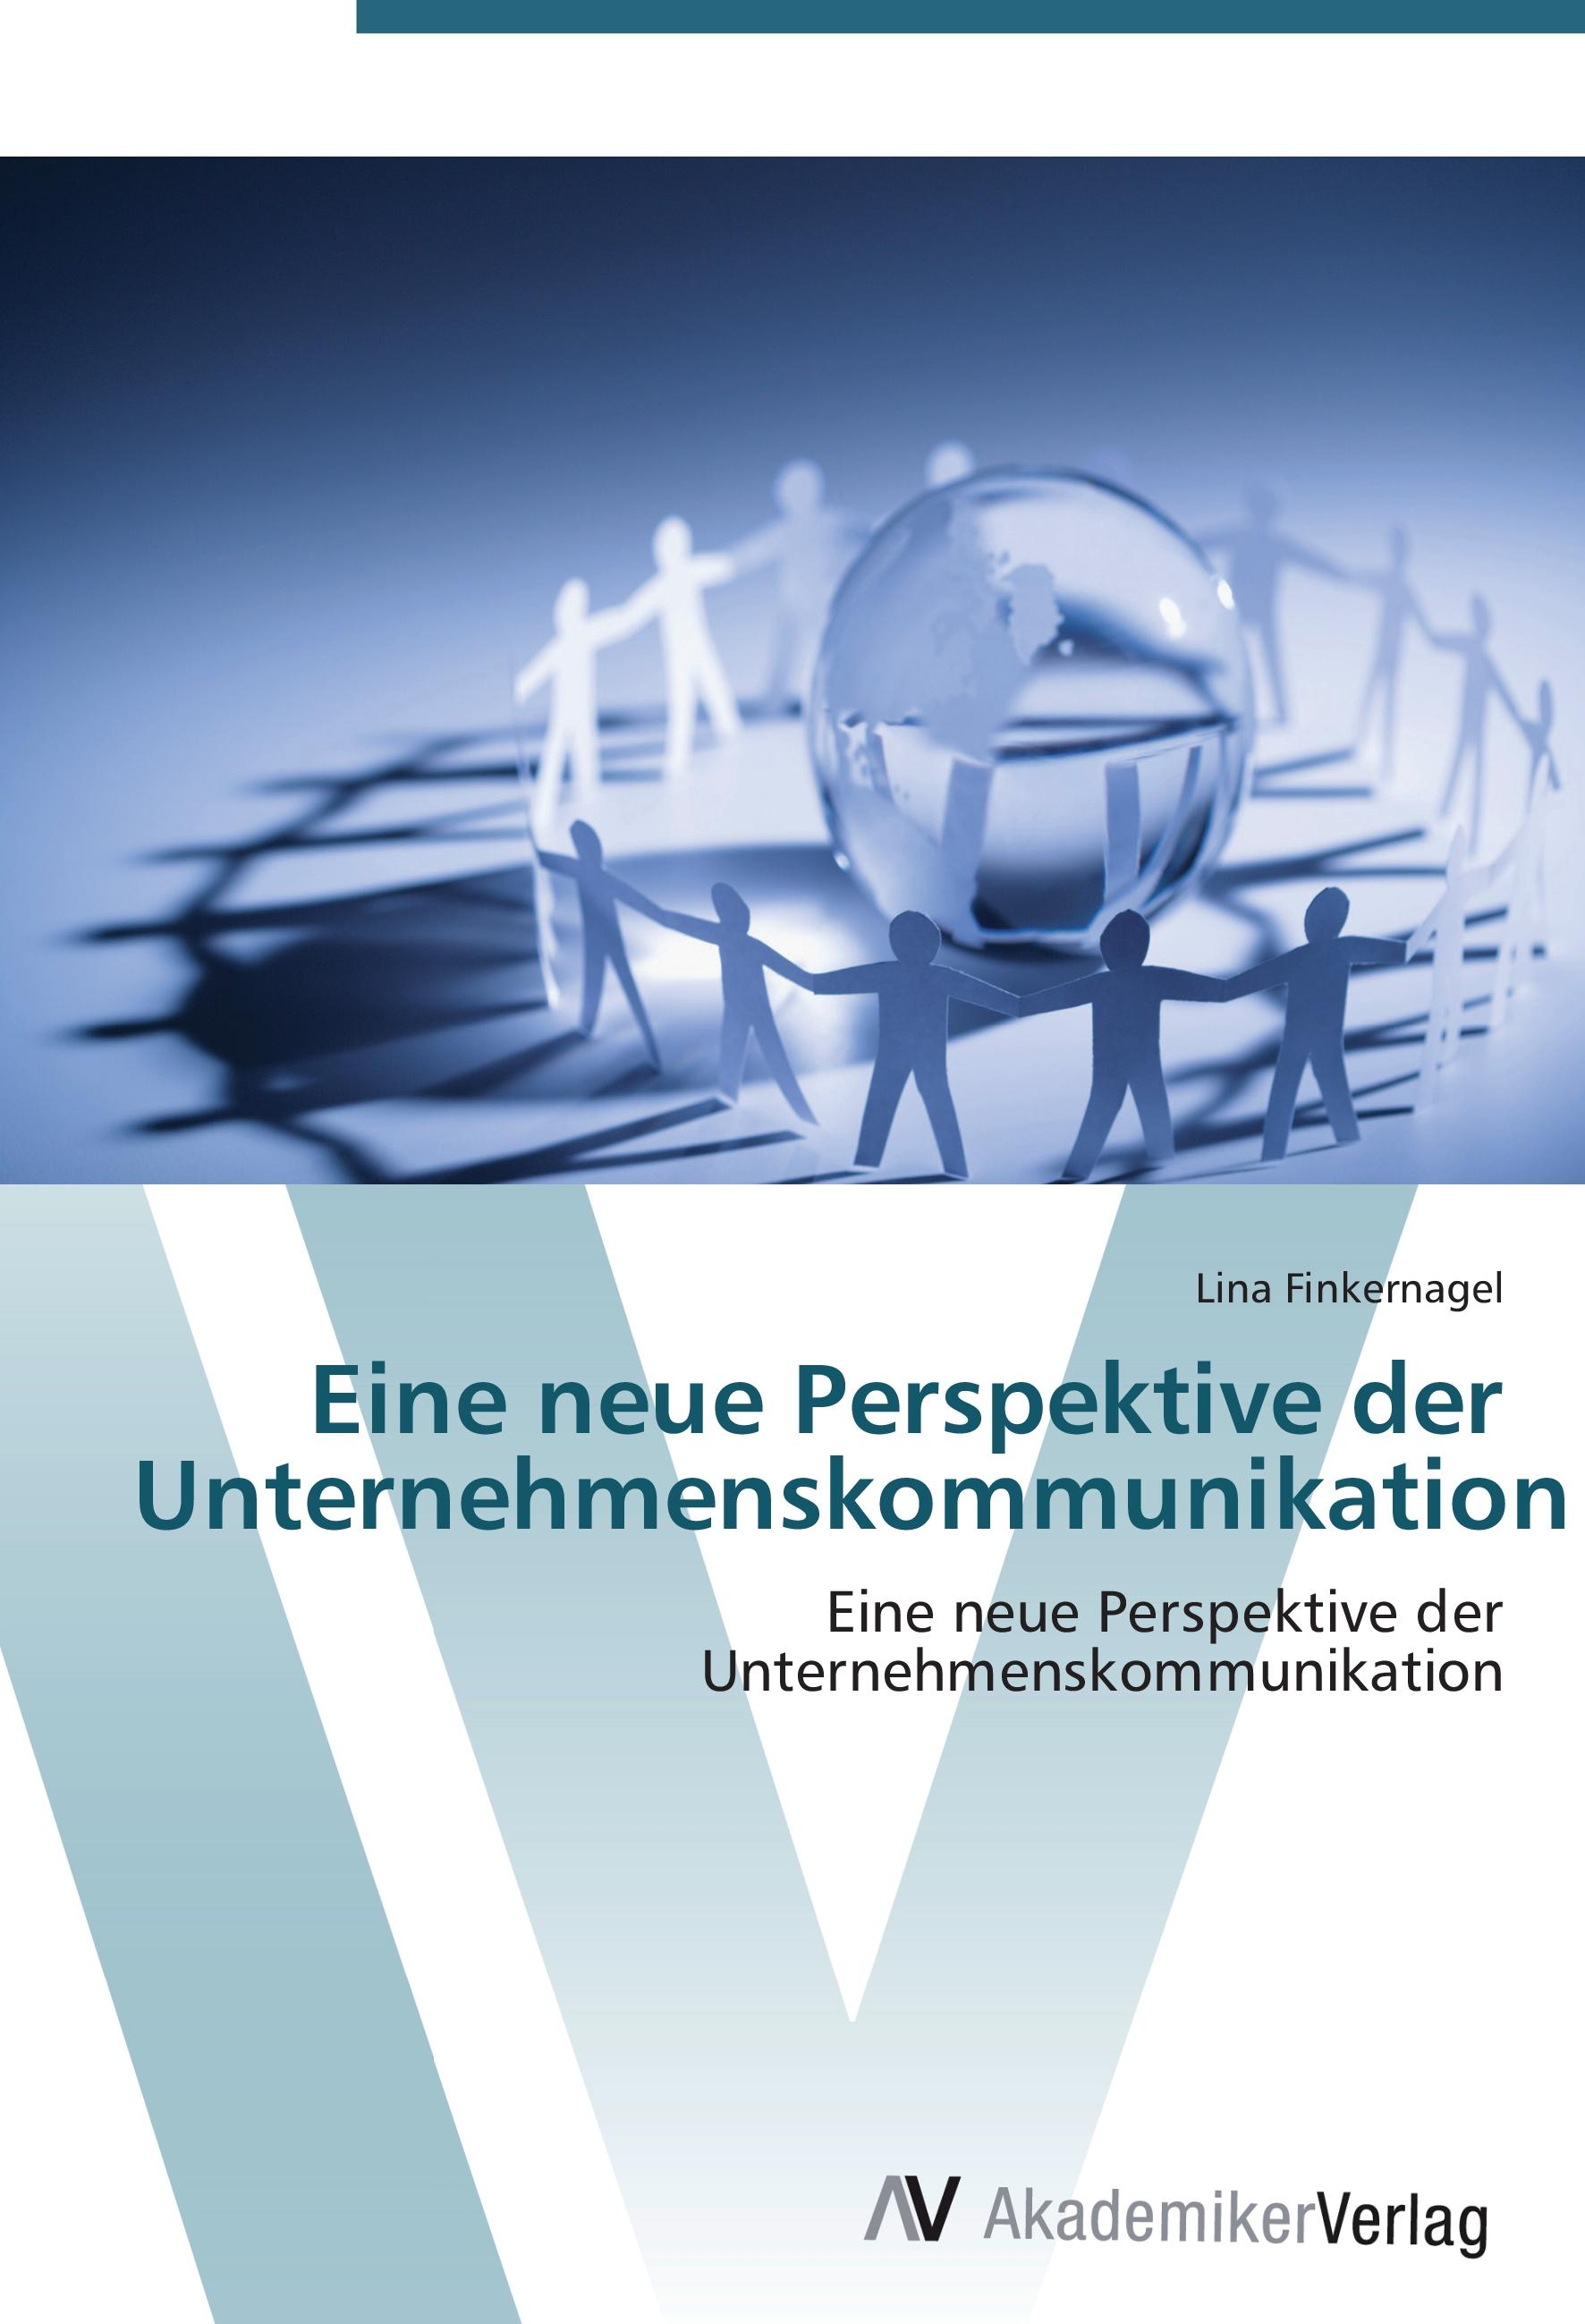 Eine neue Perspektive der Unternehmenskommunikation - Lina Finkernagel